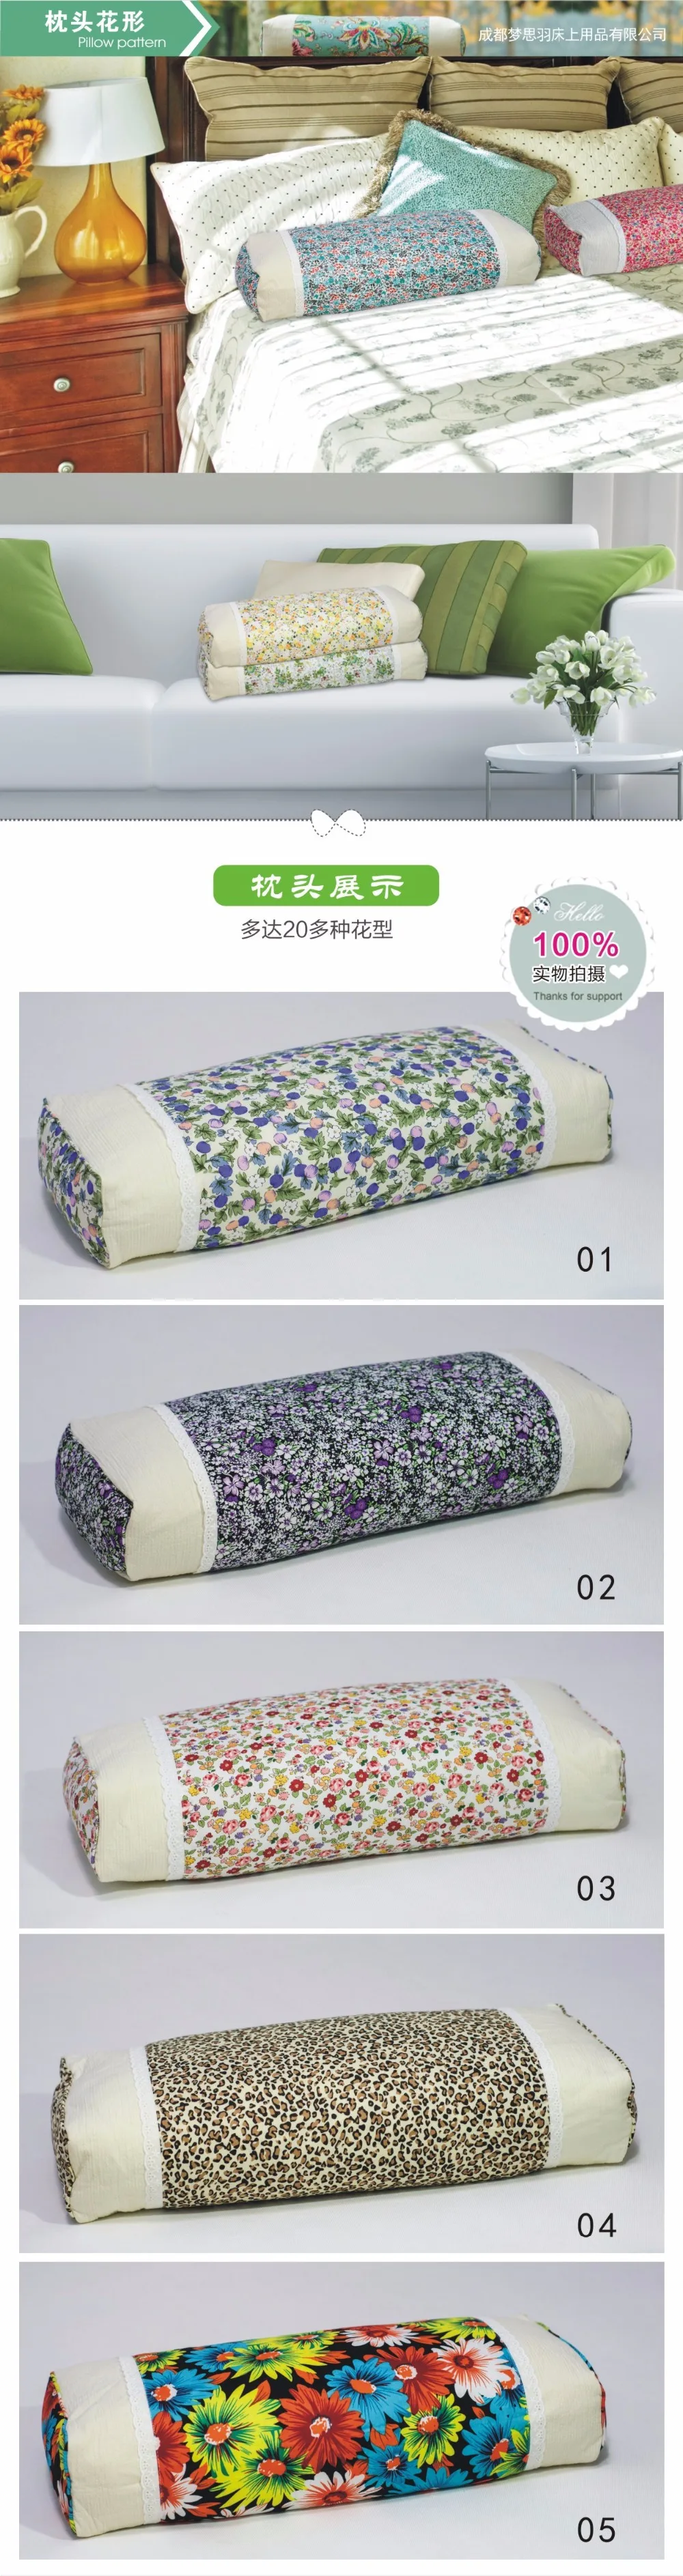 Корейская Цветочная натуральная гречка подушка для шеи позвонка подушка для медицинского ухода защита для шеи Подушка Удобная